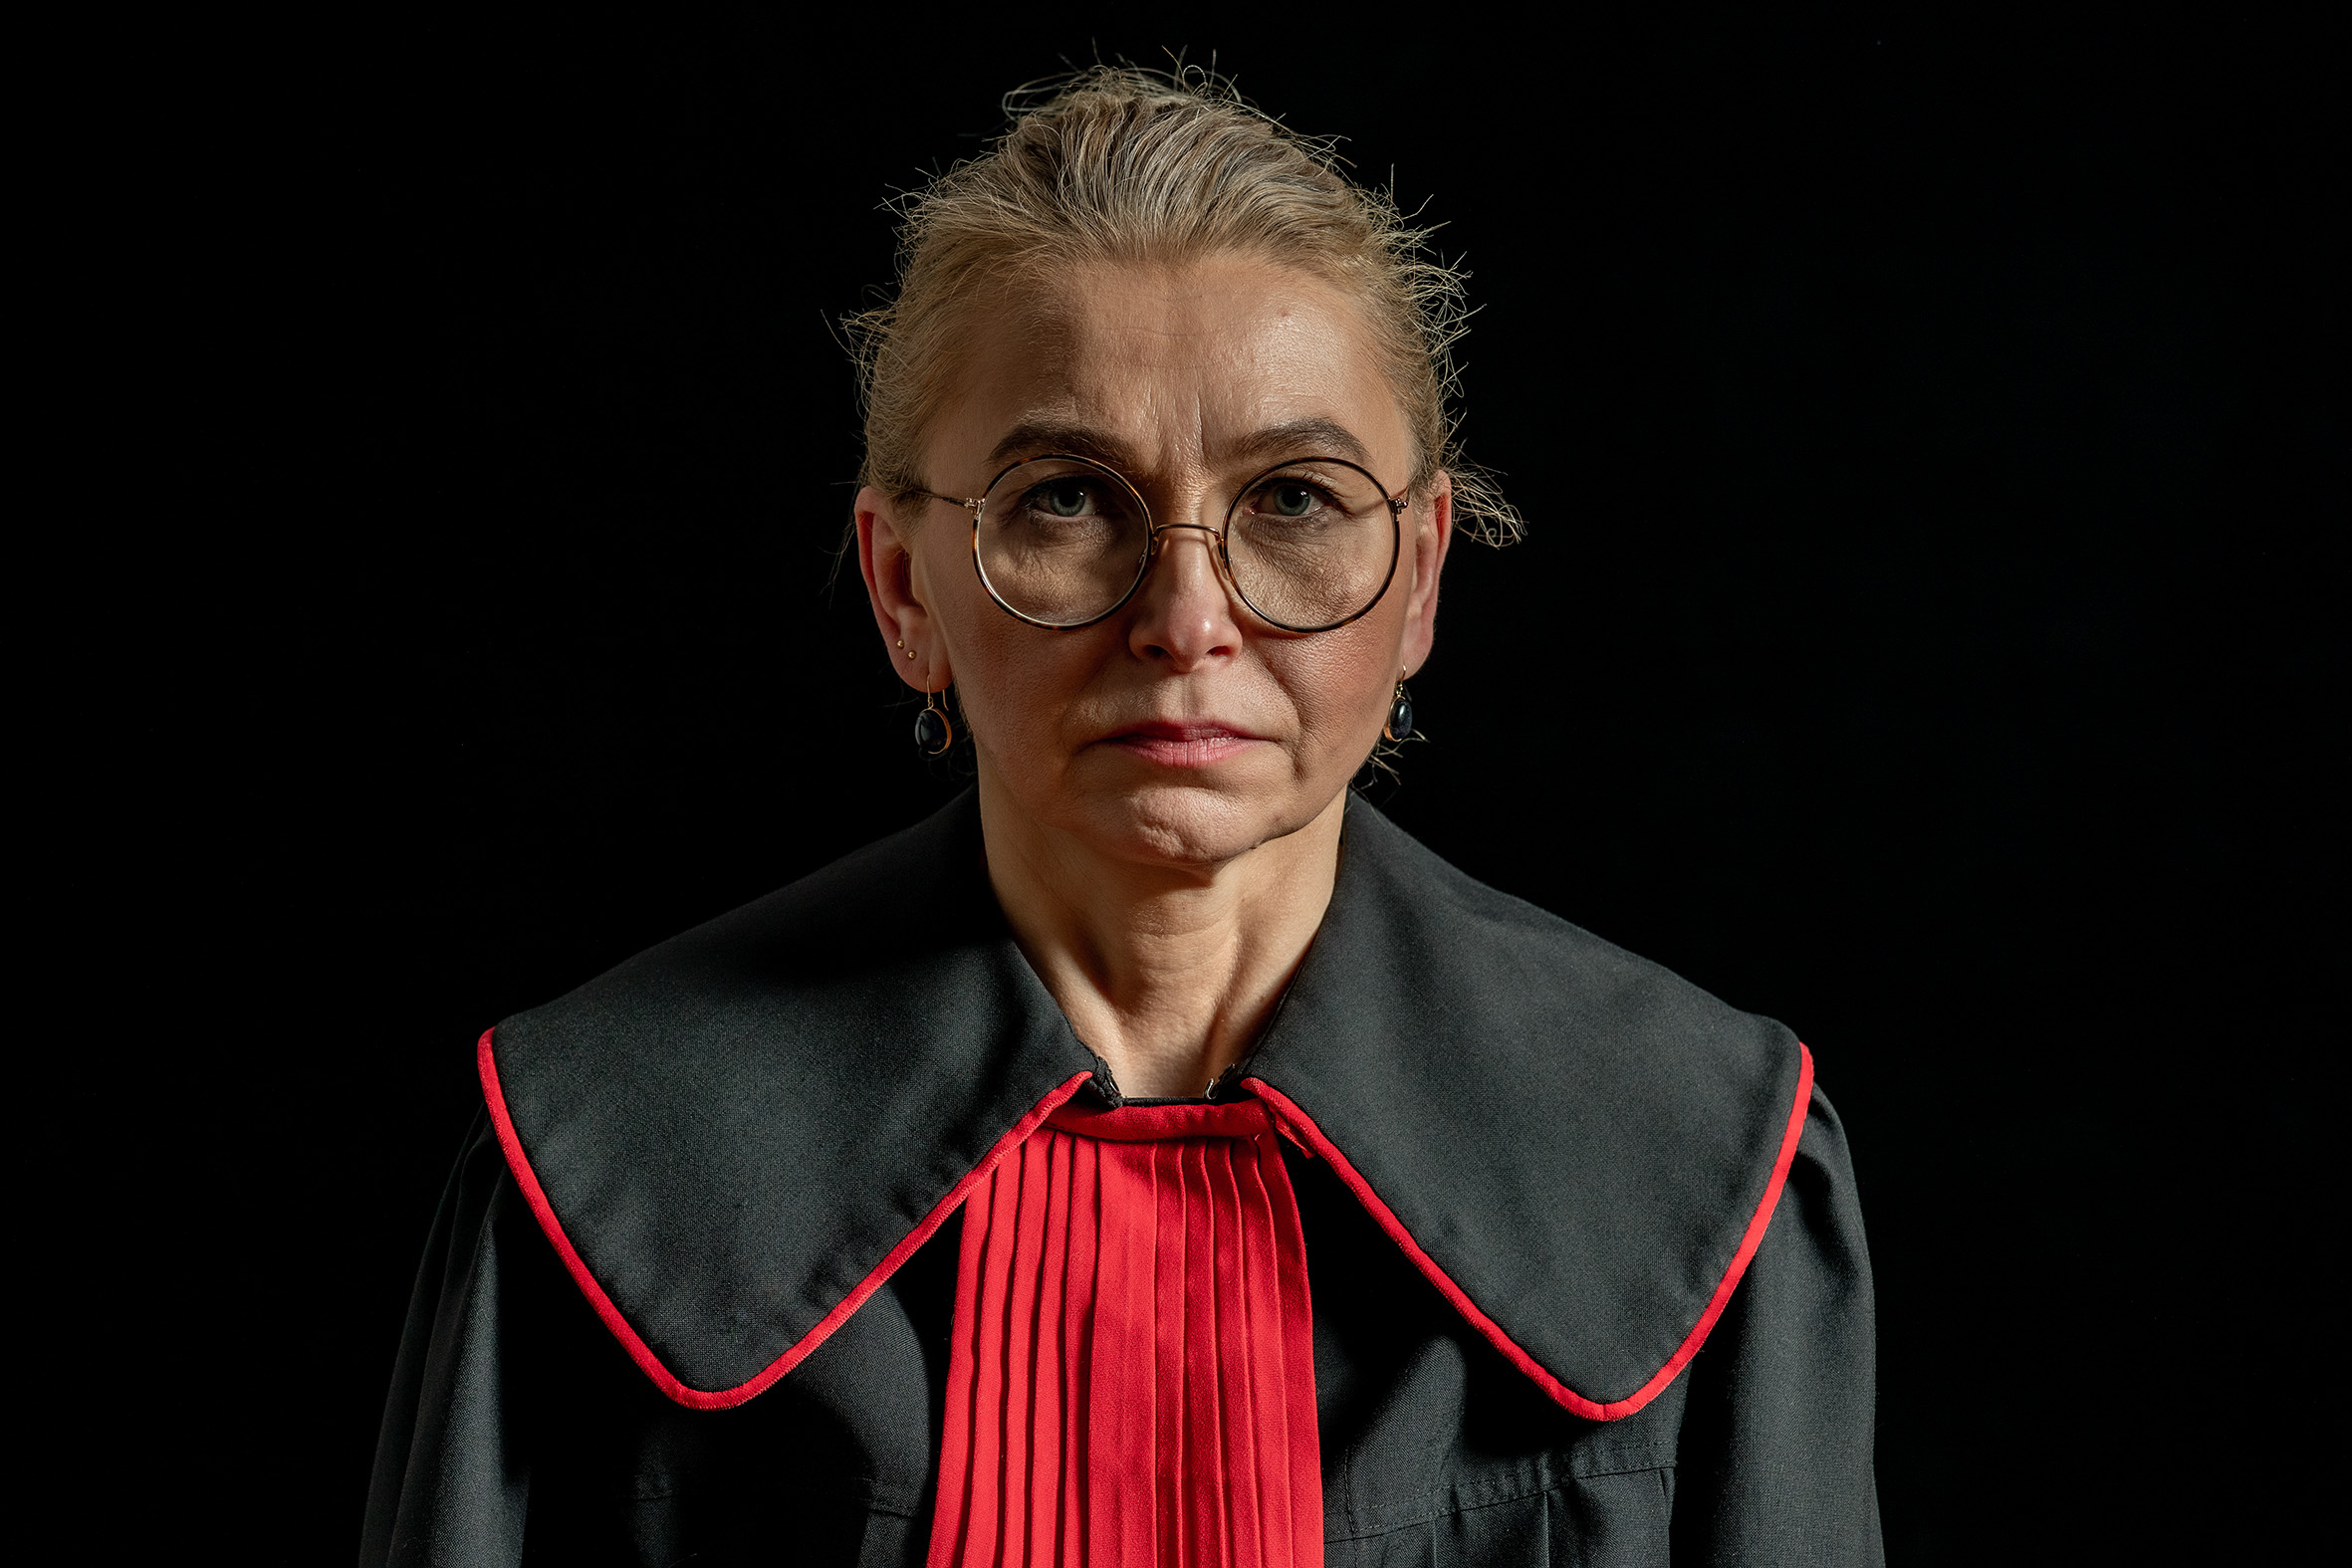 das Porträt einer widerständigen polnischen Richterin, die eine schwarz-rote Robe trägt und streng in die Kamera blickt